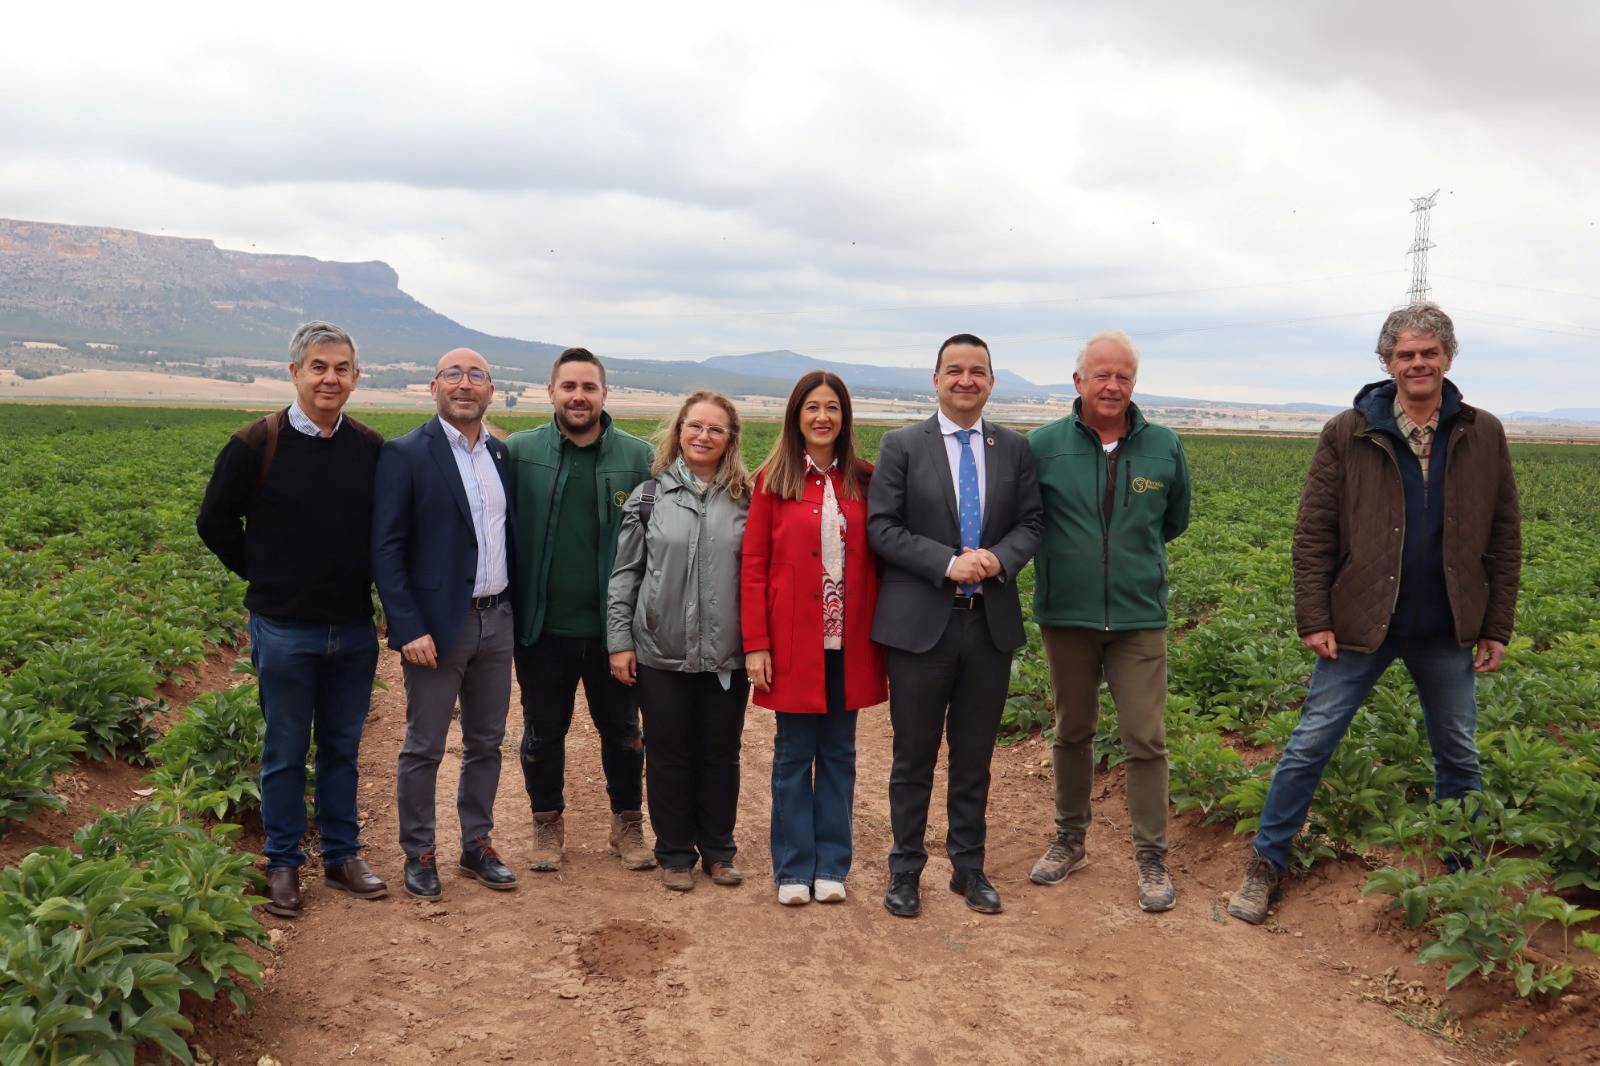 Martínez Arroyo destaca la agricultura de Castilla-La Mancha, que es “competitiva, diversa y eficiente” en el uso de recursos 